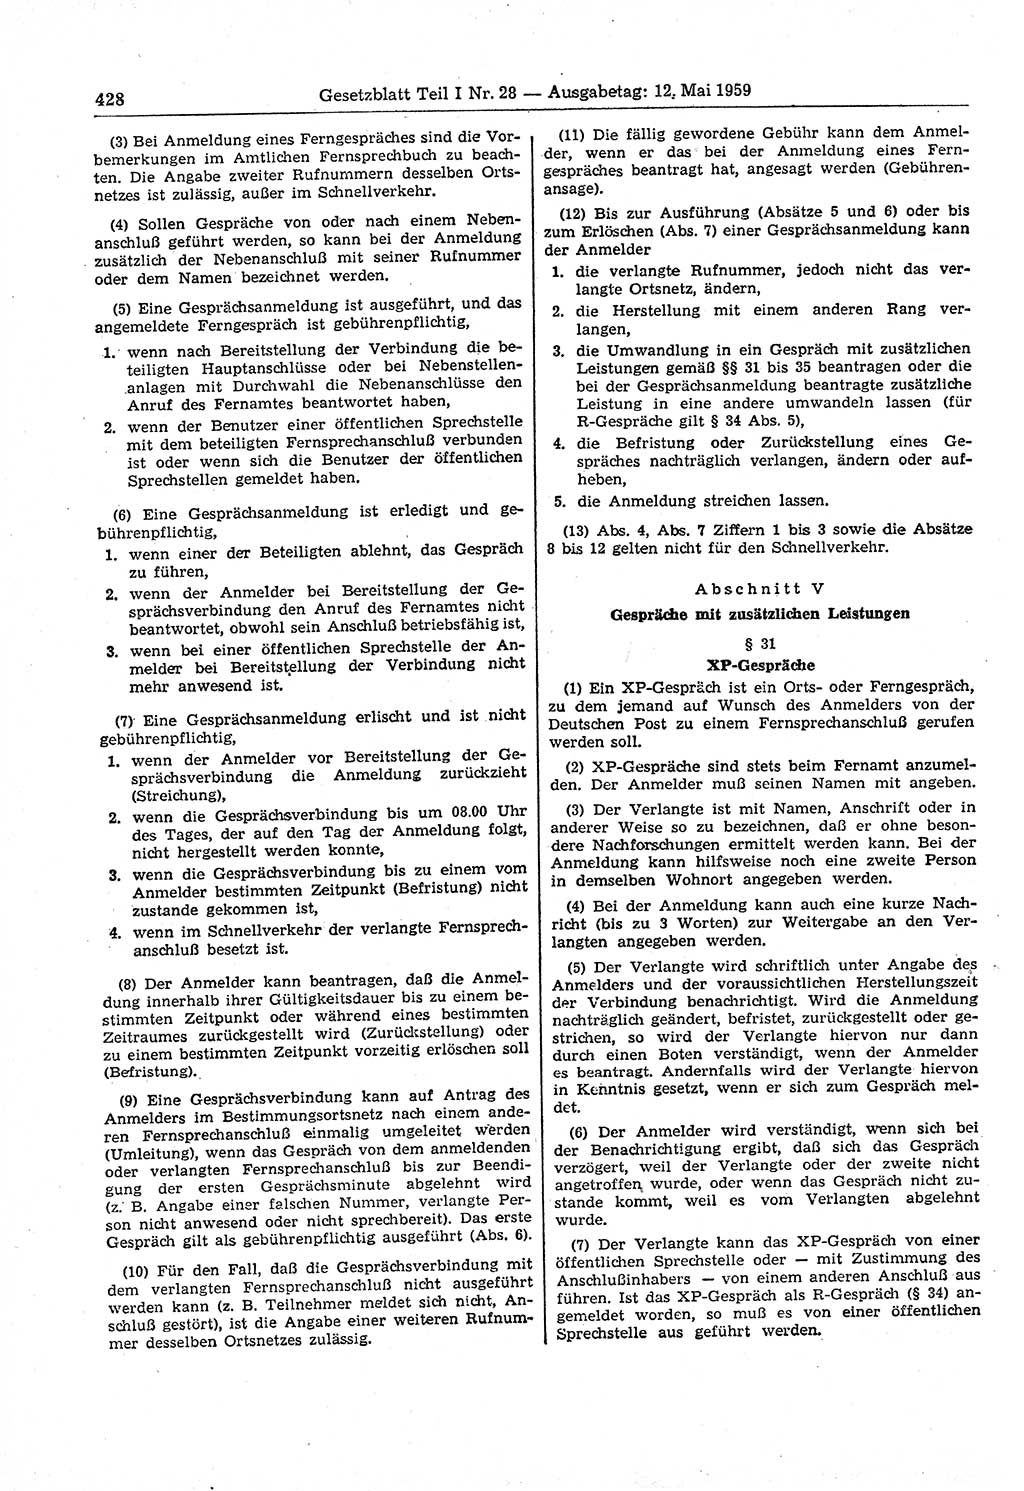 Gesetzblatt (GBl.) der Deutschen Demokratischen Republik (DDR) Teil Ⅰ 1959, Seite 428 (GBl. DDR Ⅰ 1959, S. 428)